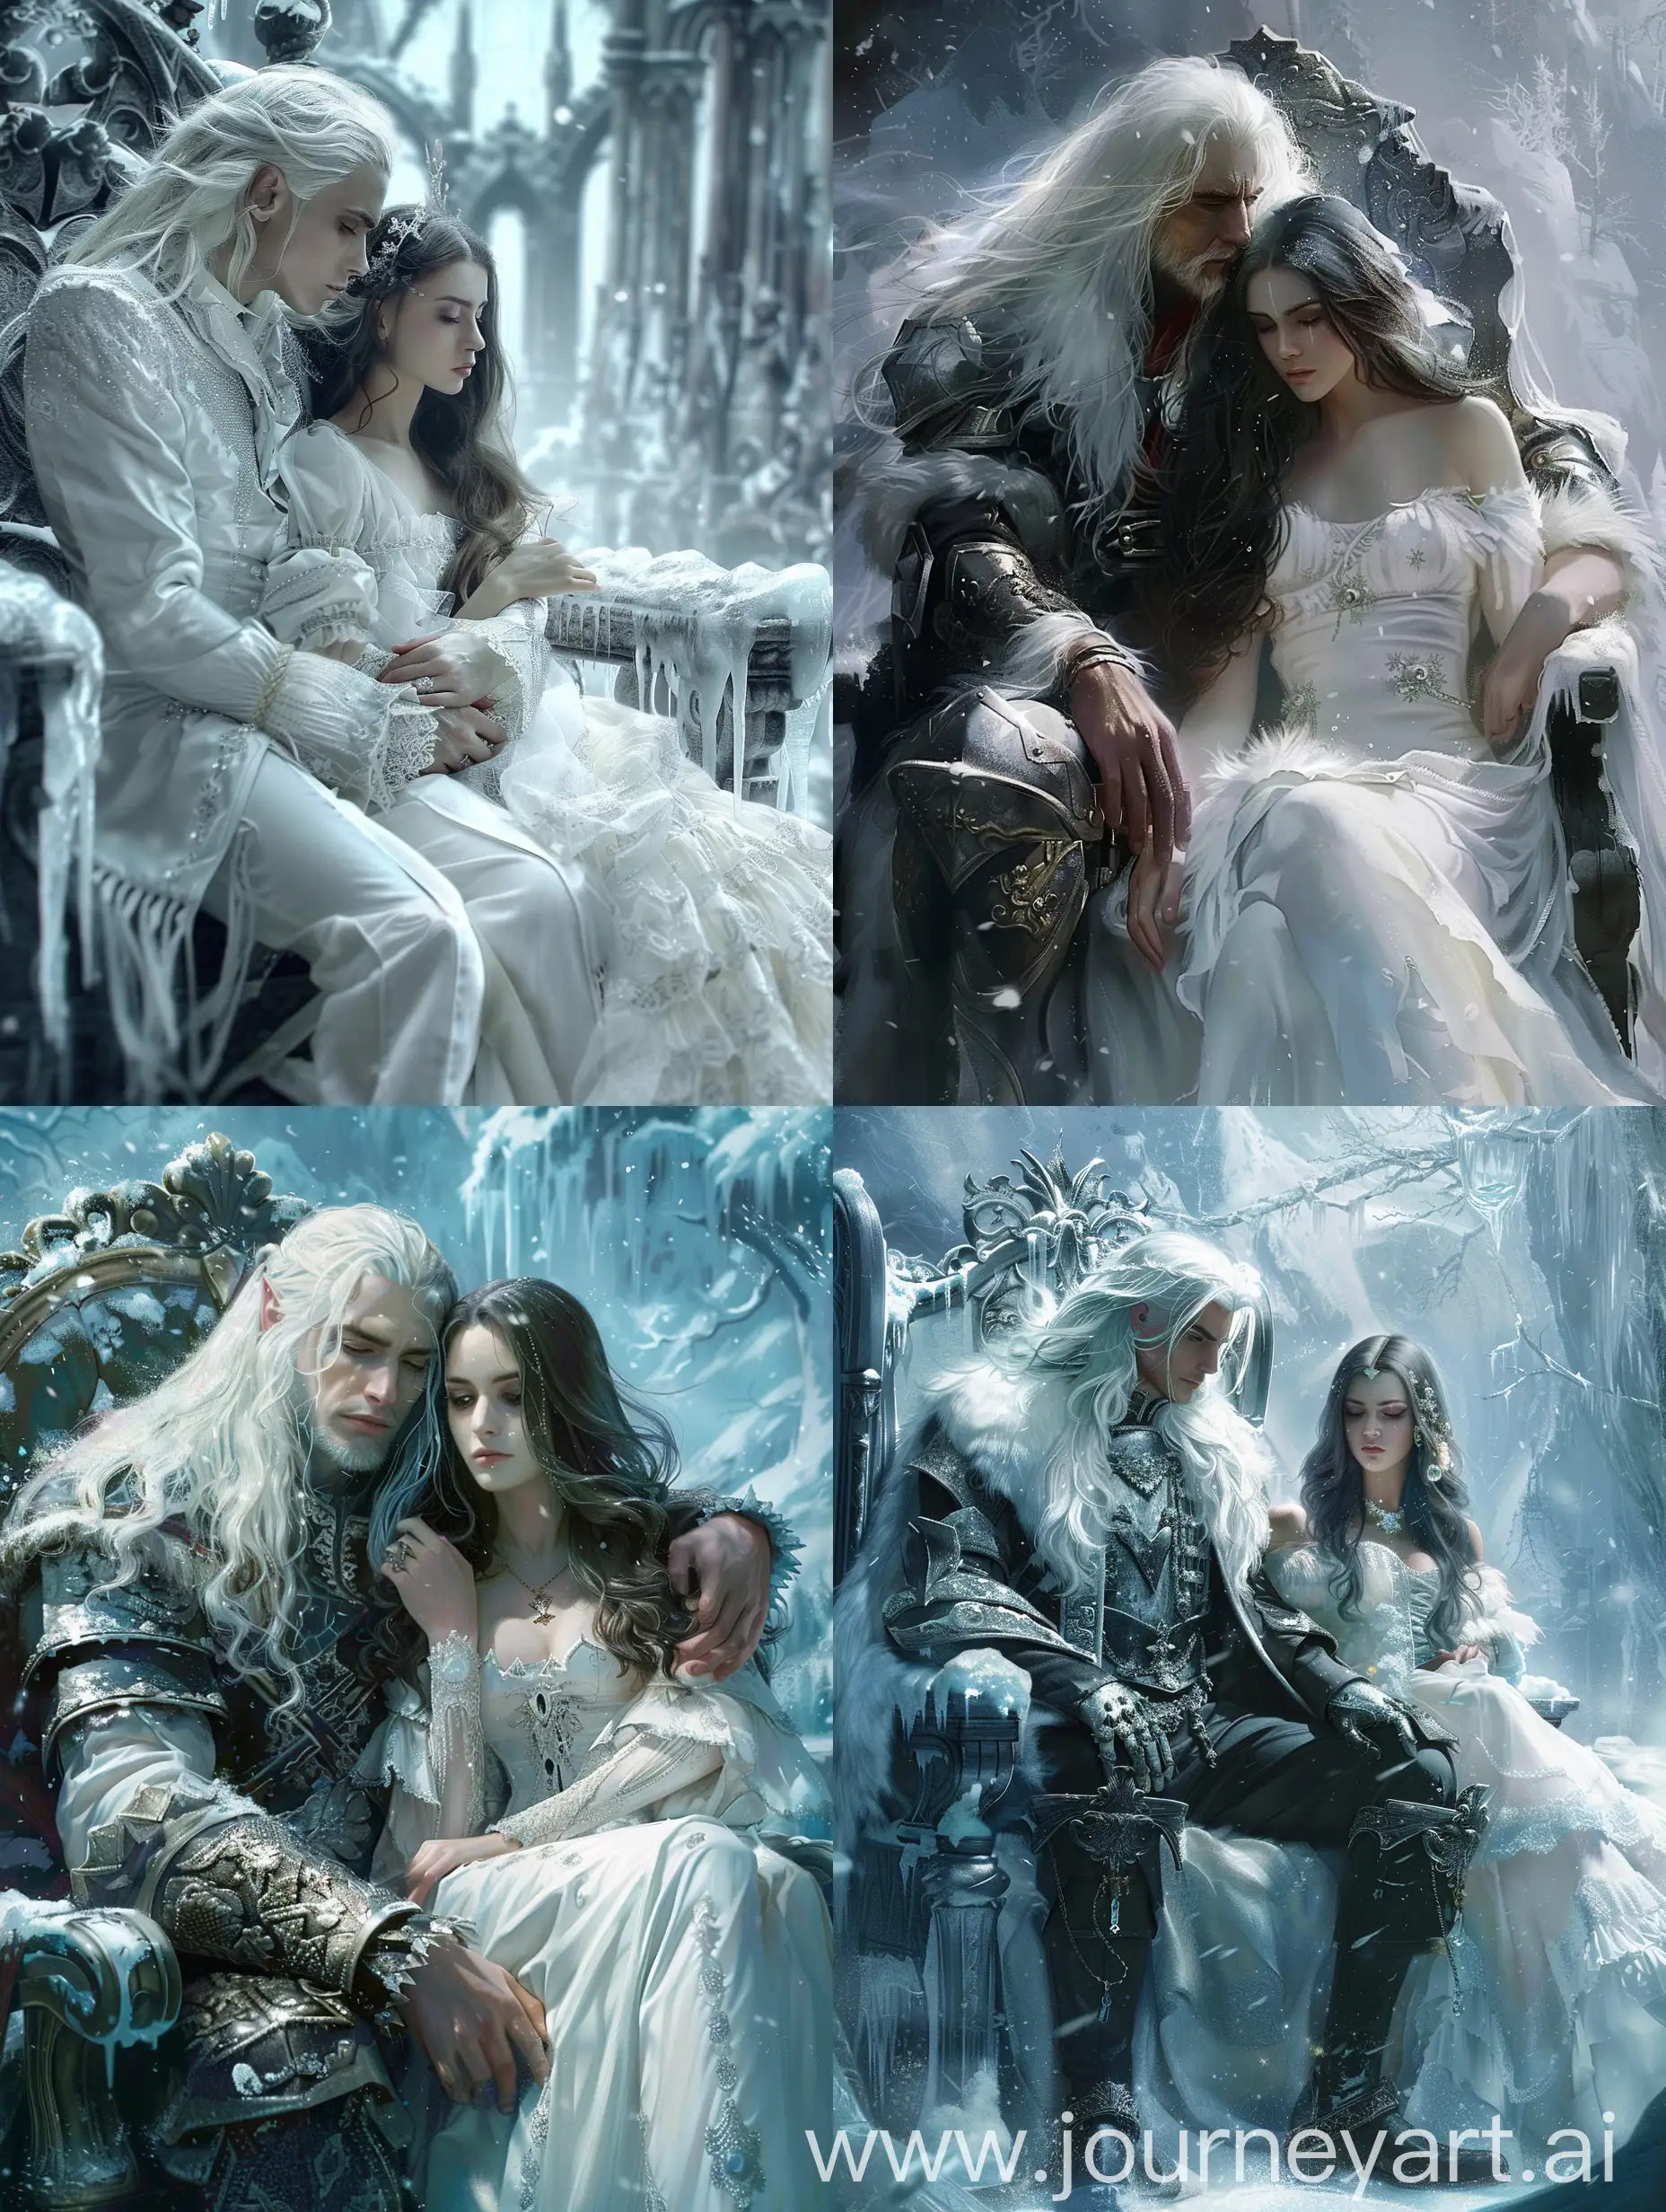 Fantasy-Scene-WhiteHaired-Man-and-Brunette-Girl-in-Snowy-Landscape